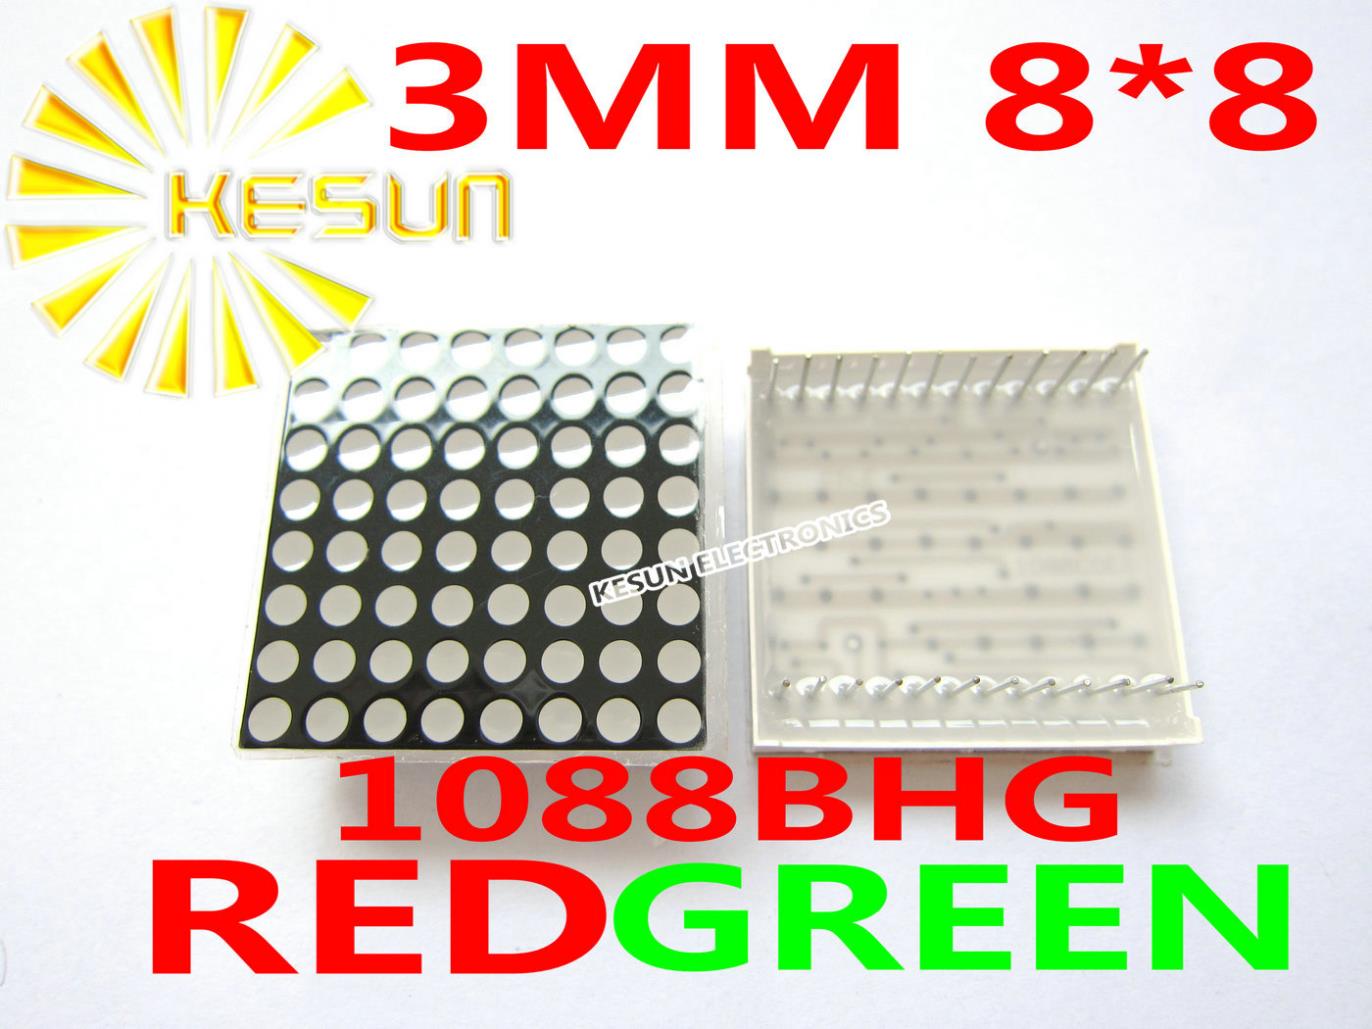 БЕСПЛАТЕН ПРЕВОЗОТ 10PCS 3ММ 8X8 Црвена Зелена bi-боја Заеднички Анодна 32*32 LED Dot Matrix Дигитални Цевка Модул 1088BHG